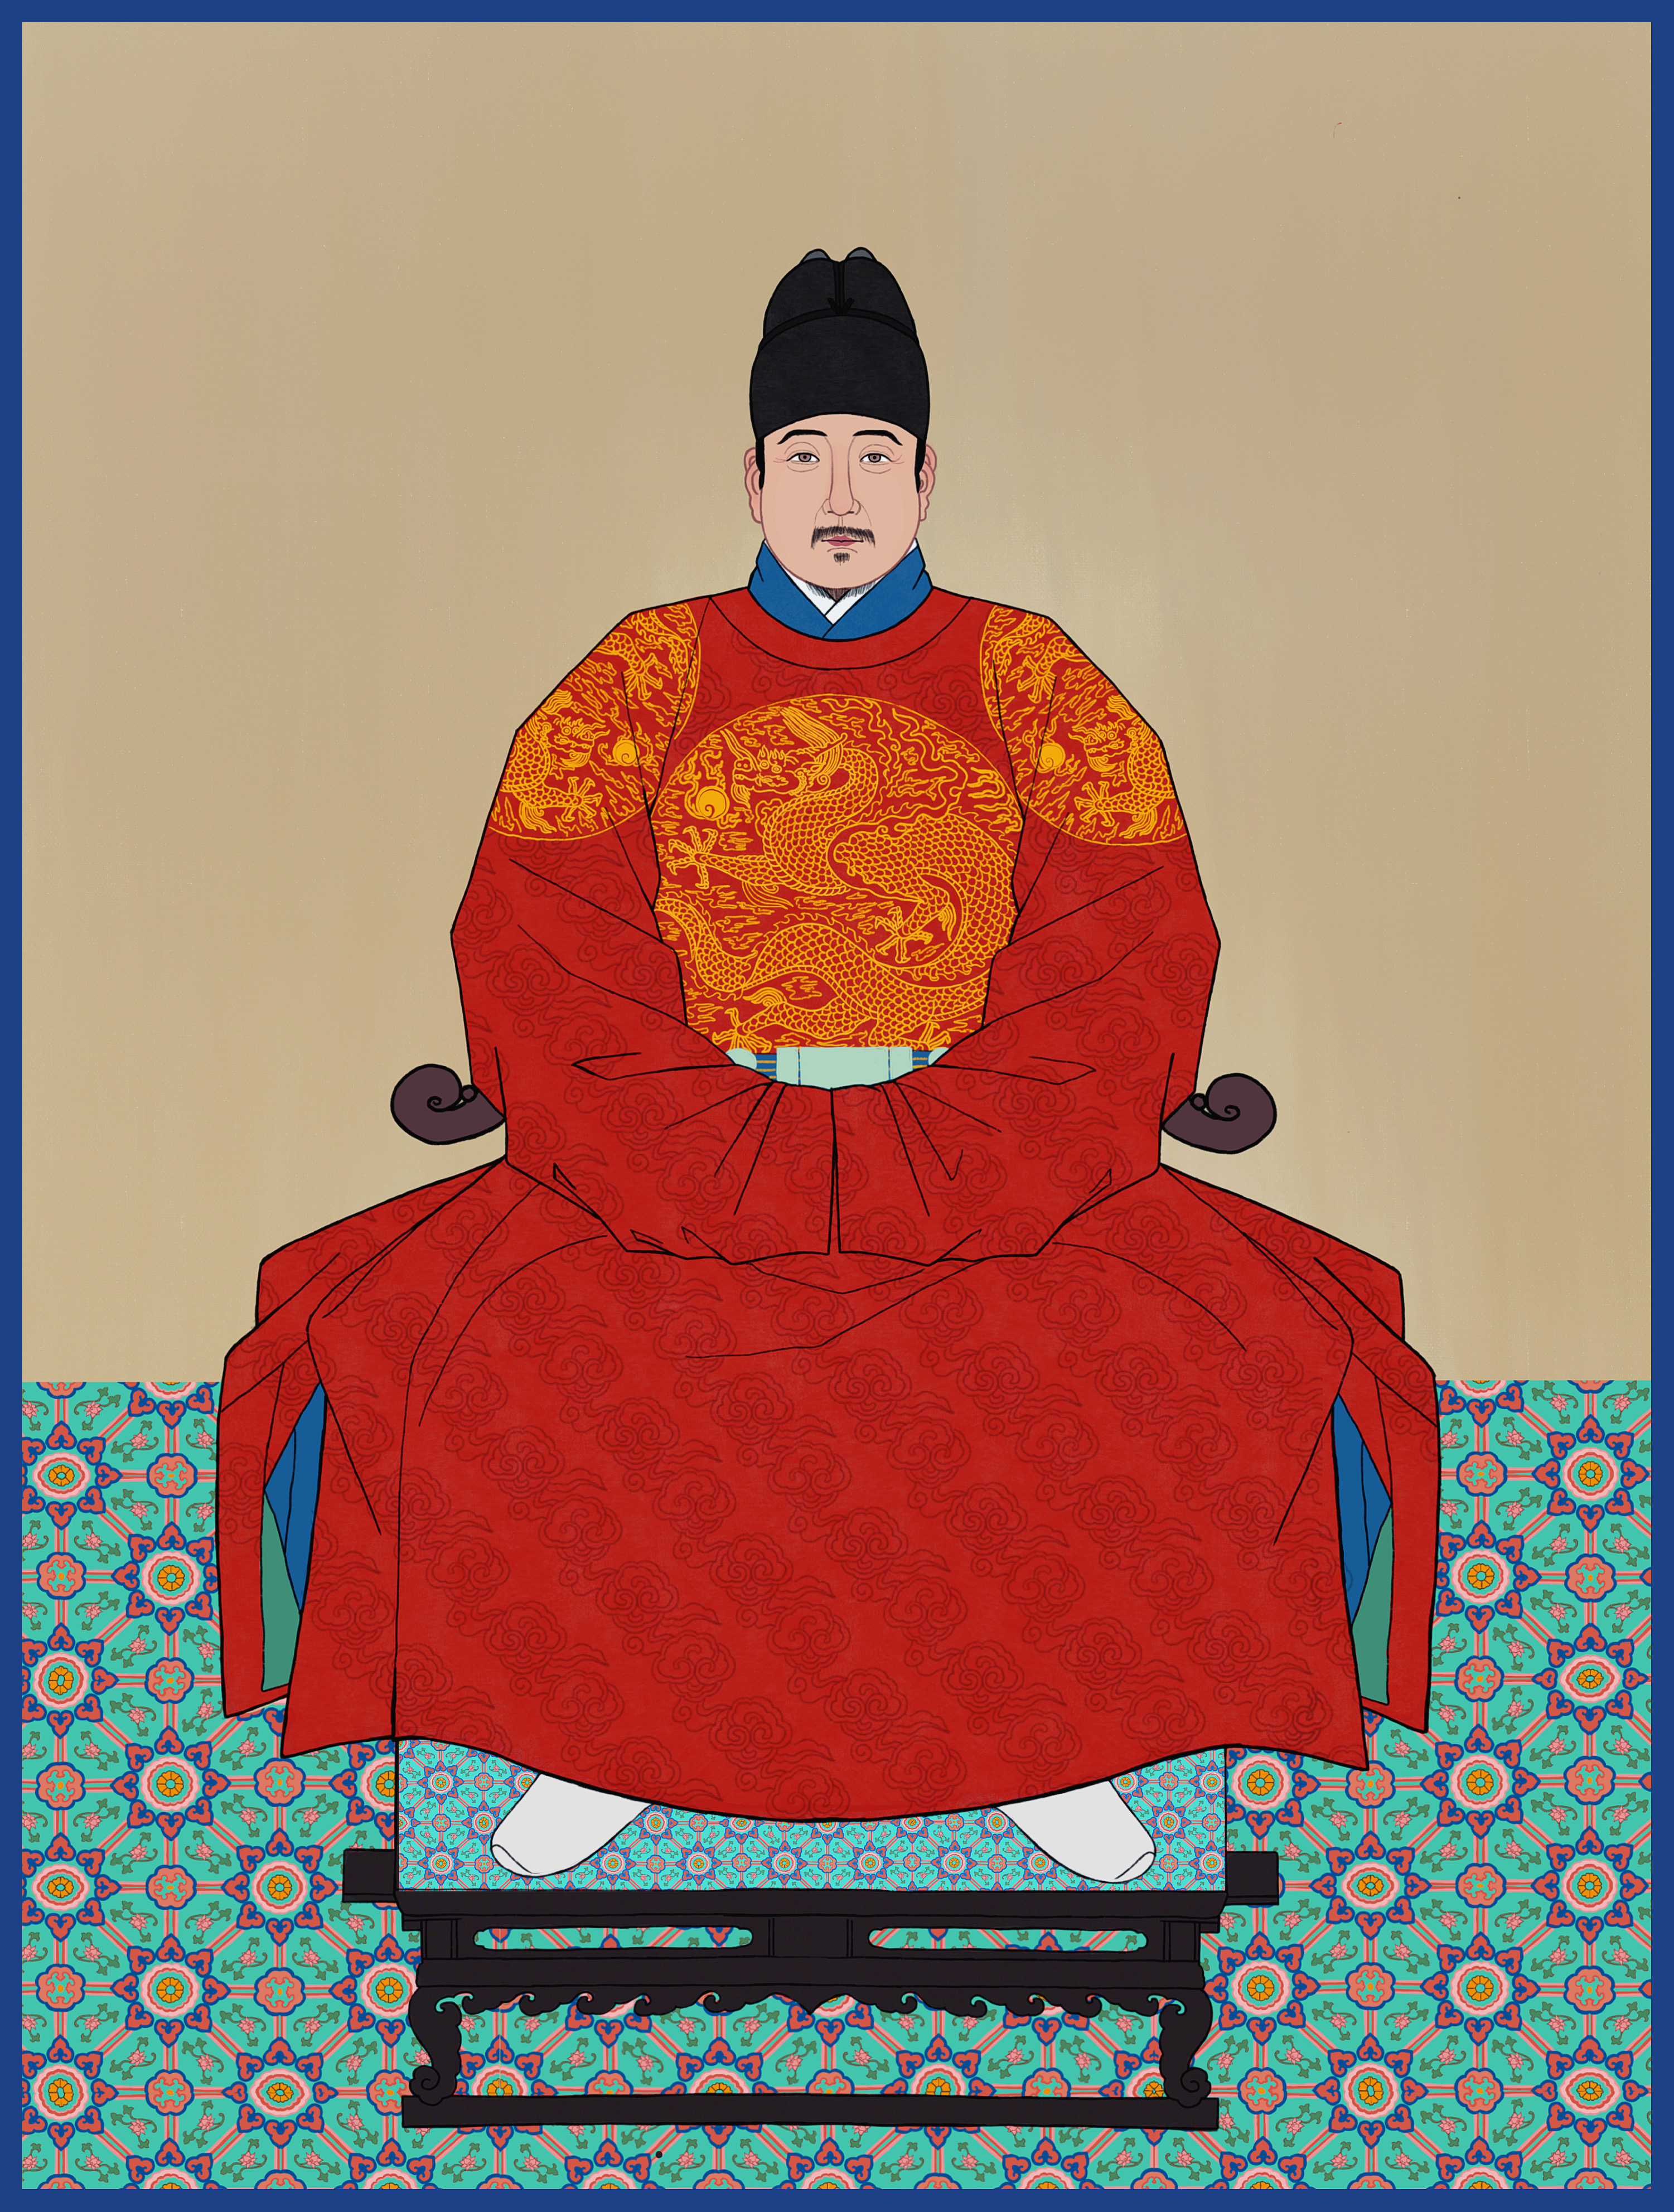 分享收藏明朝皇后坐像朝鲜太宗画像李朝鲜国王 老年版宪宗明代宗景泰